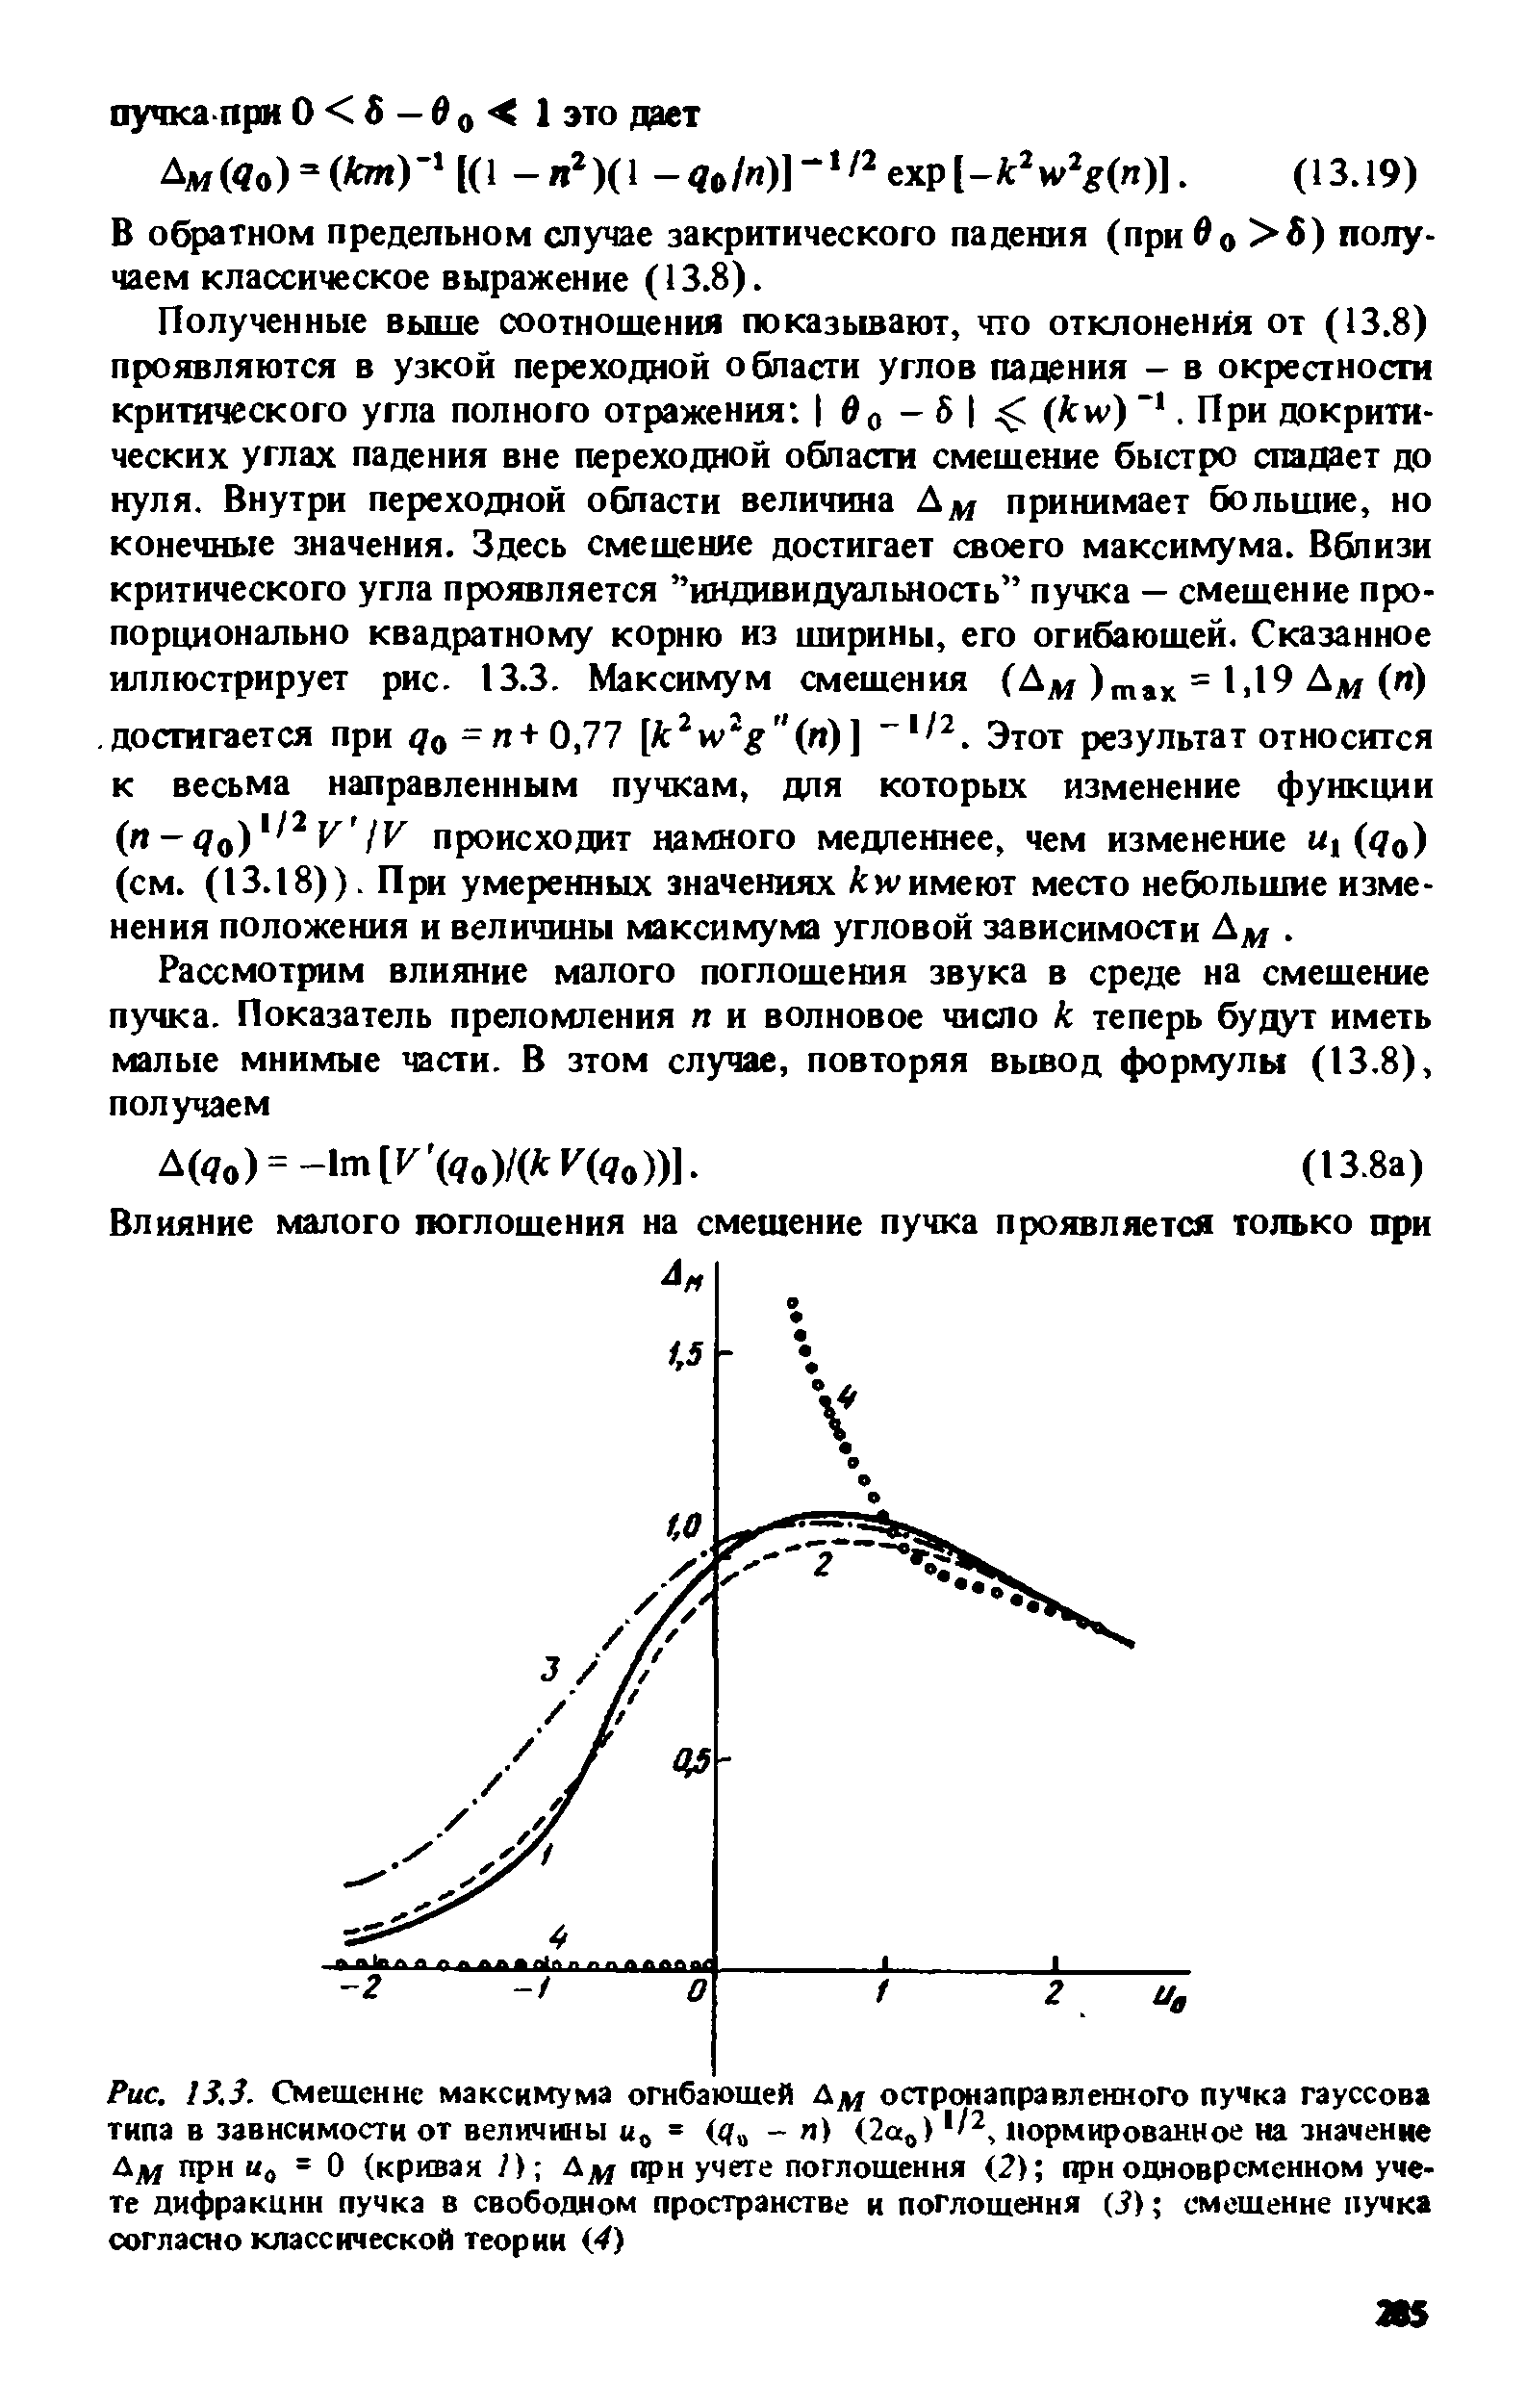 Рис. 13.3. Смешение максимума огибаюшей Дм остронаправленного пучка гауссова типа в зависимости от величины и = (< - п) (2а ) нормированное на значение Дм при 0=0 (кривая 7) Дм "Рн учете поглошения (2) при одновременном учете дифракции пучка в свободном пространстве и поглошения ( ) смешение пучка согласно классической теории 4)
